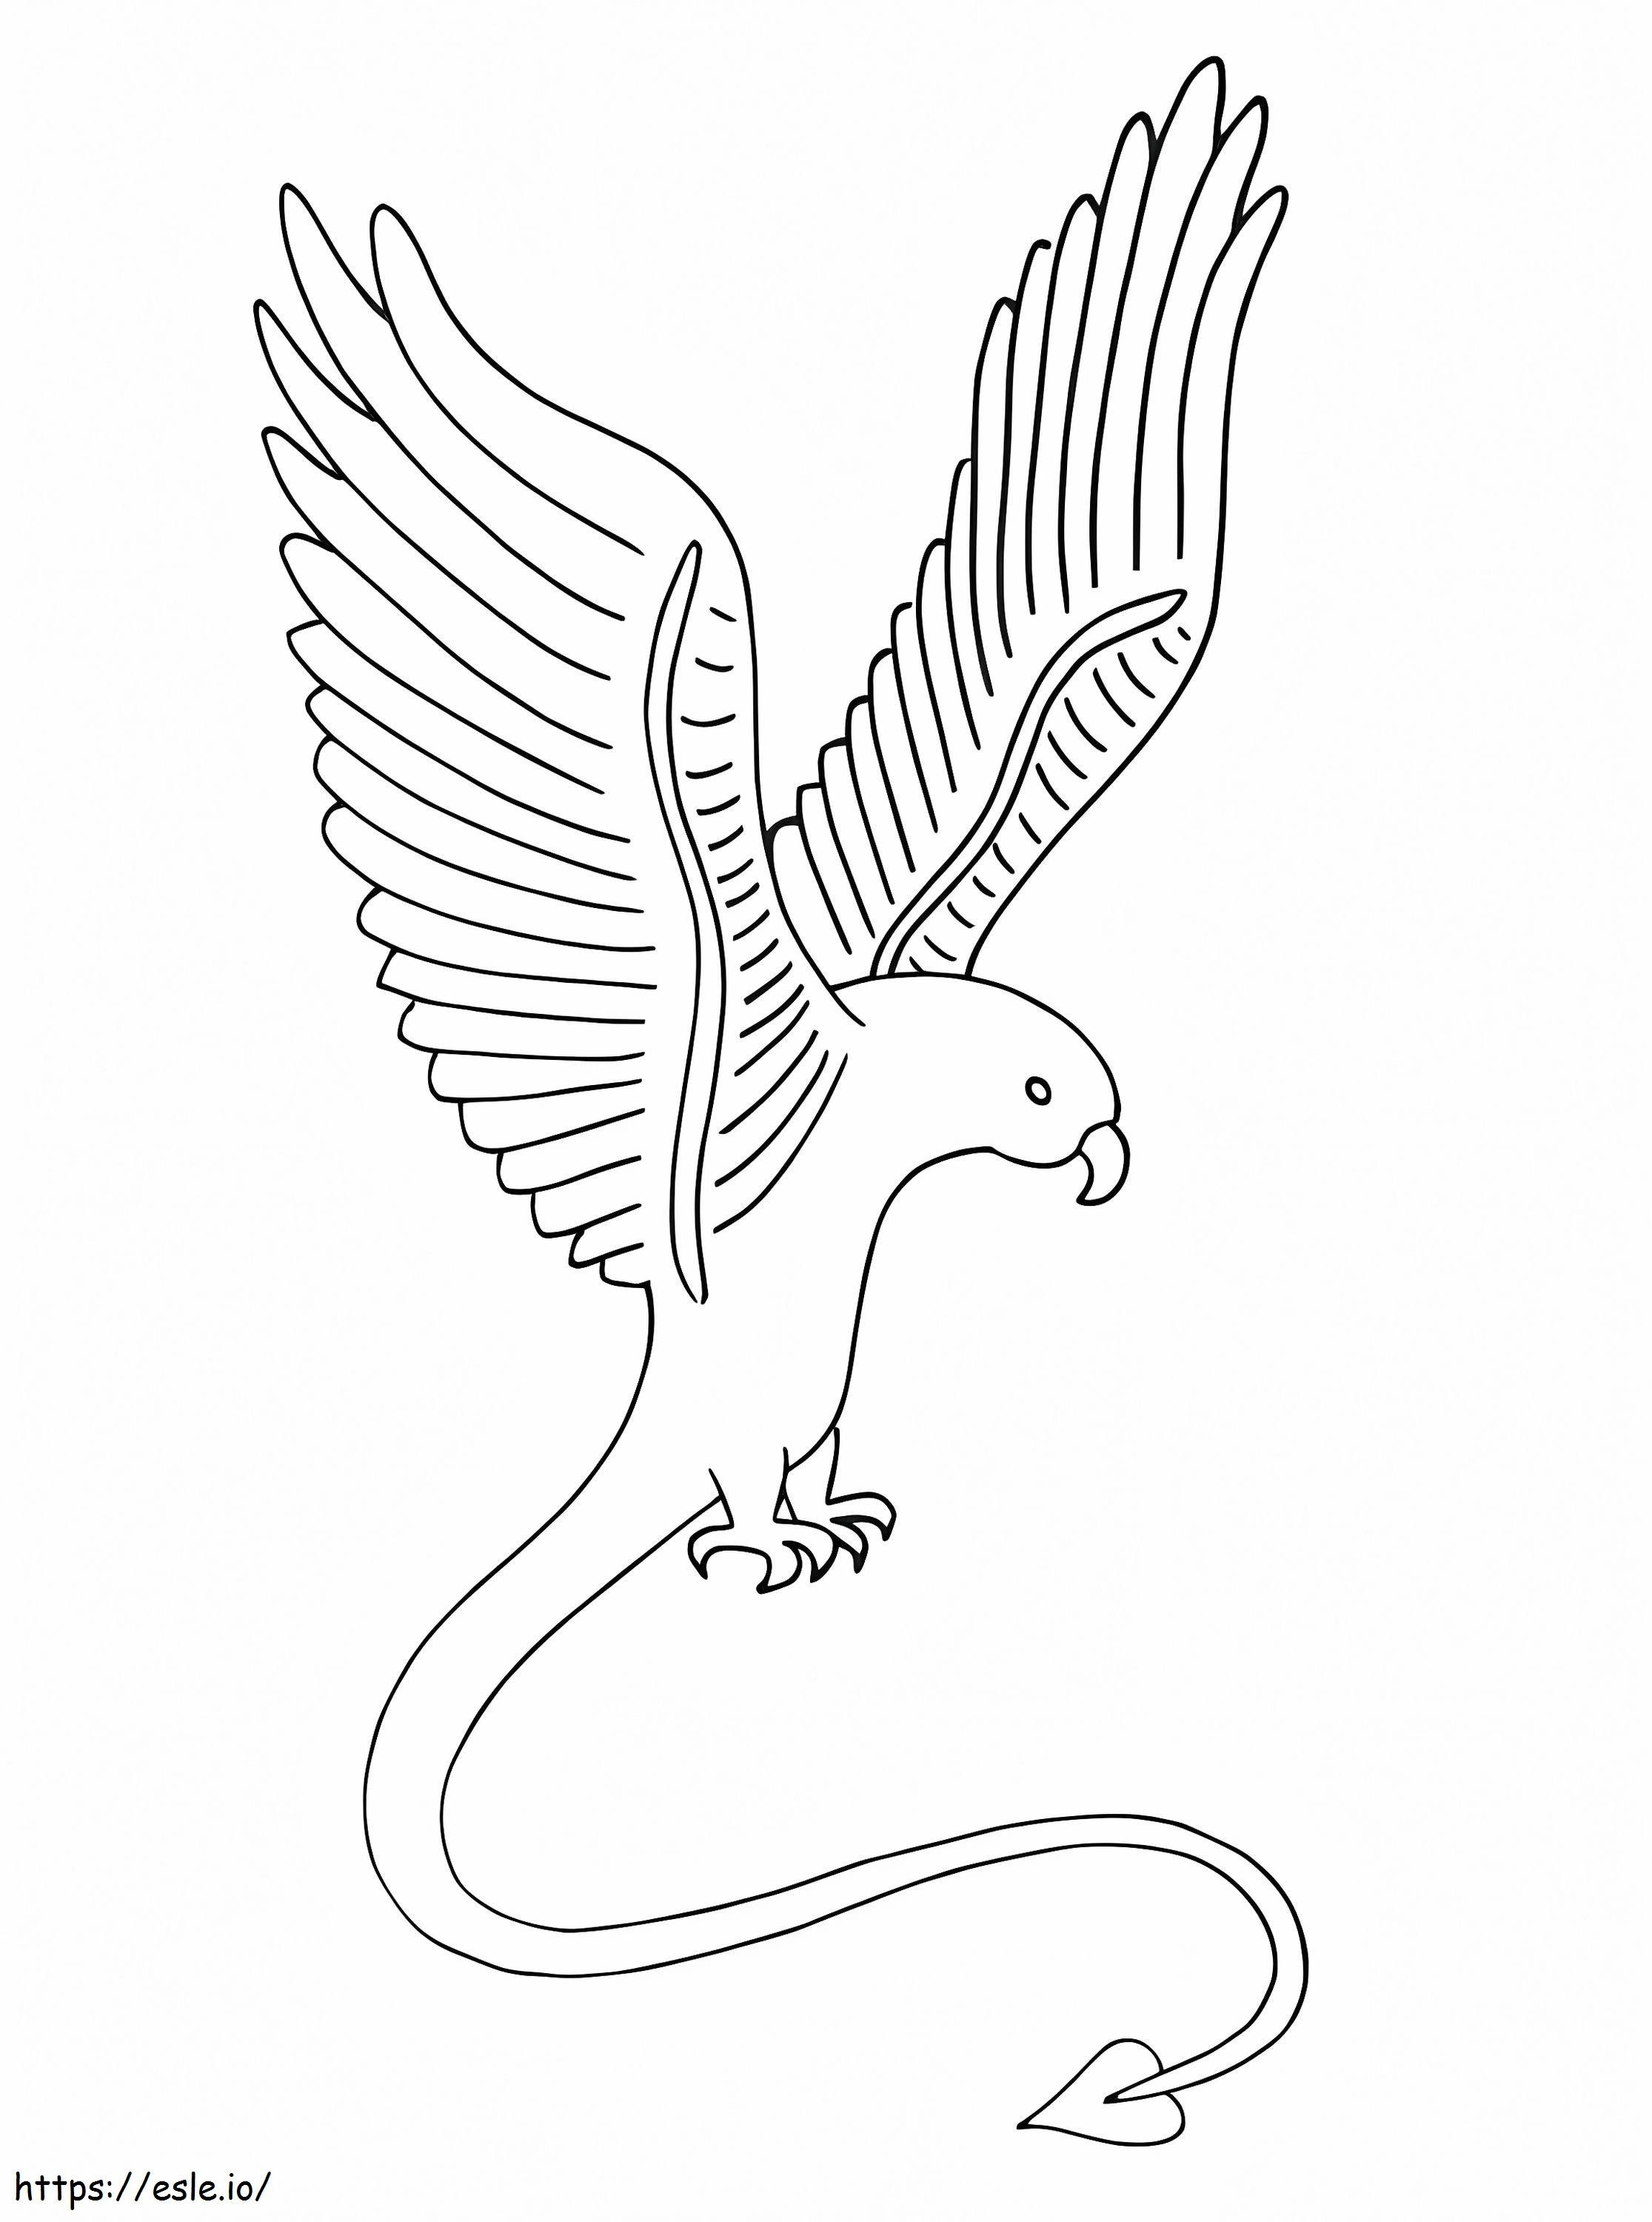 Eagle Alebrijes coloring page